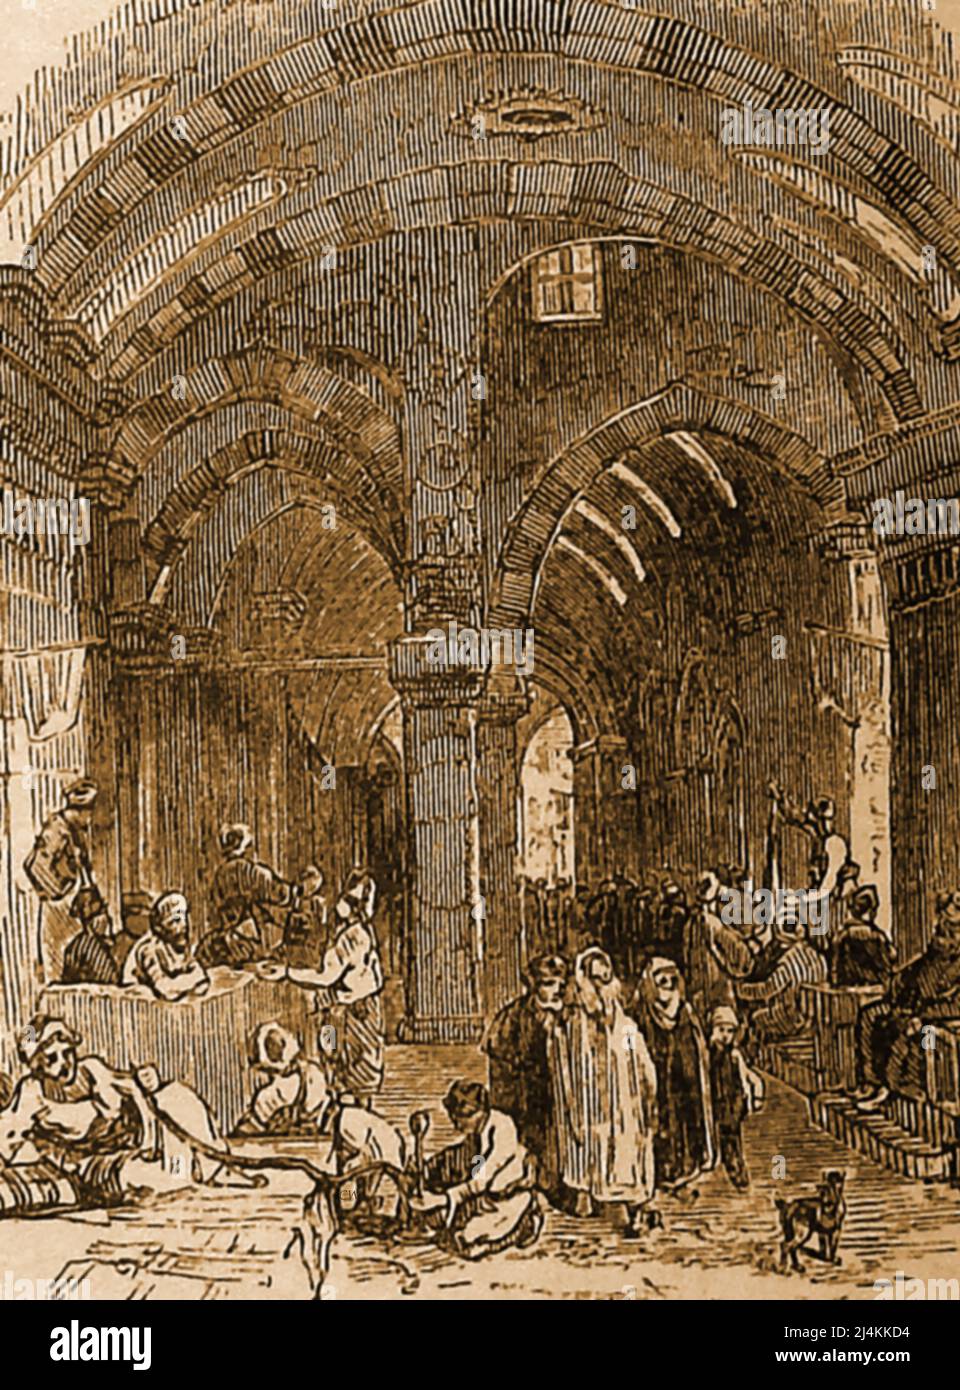 Un grabado del siglo 19th que muestra el Gran Bazar Constantinopla (Estambul) como era en ese momento. Hoy en día el Gran Bazar sigue funcionando y emplea a unas 26.000 personas y atrae hasta 400.000 visitantes diarios ---------------------------- Konstantinopolis'teki Büyük Çarşı'yı gösteren 19. yüzyıldan kalma bir gravür (İstanbul). Foto de stock